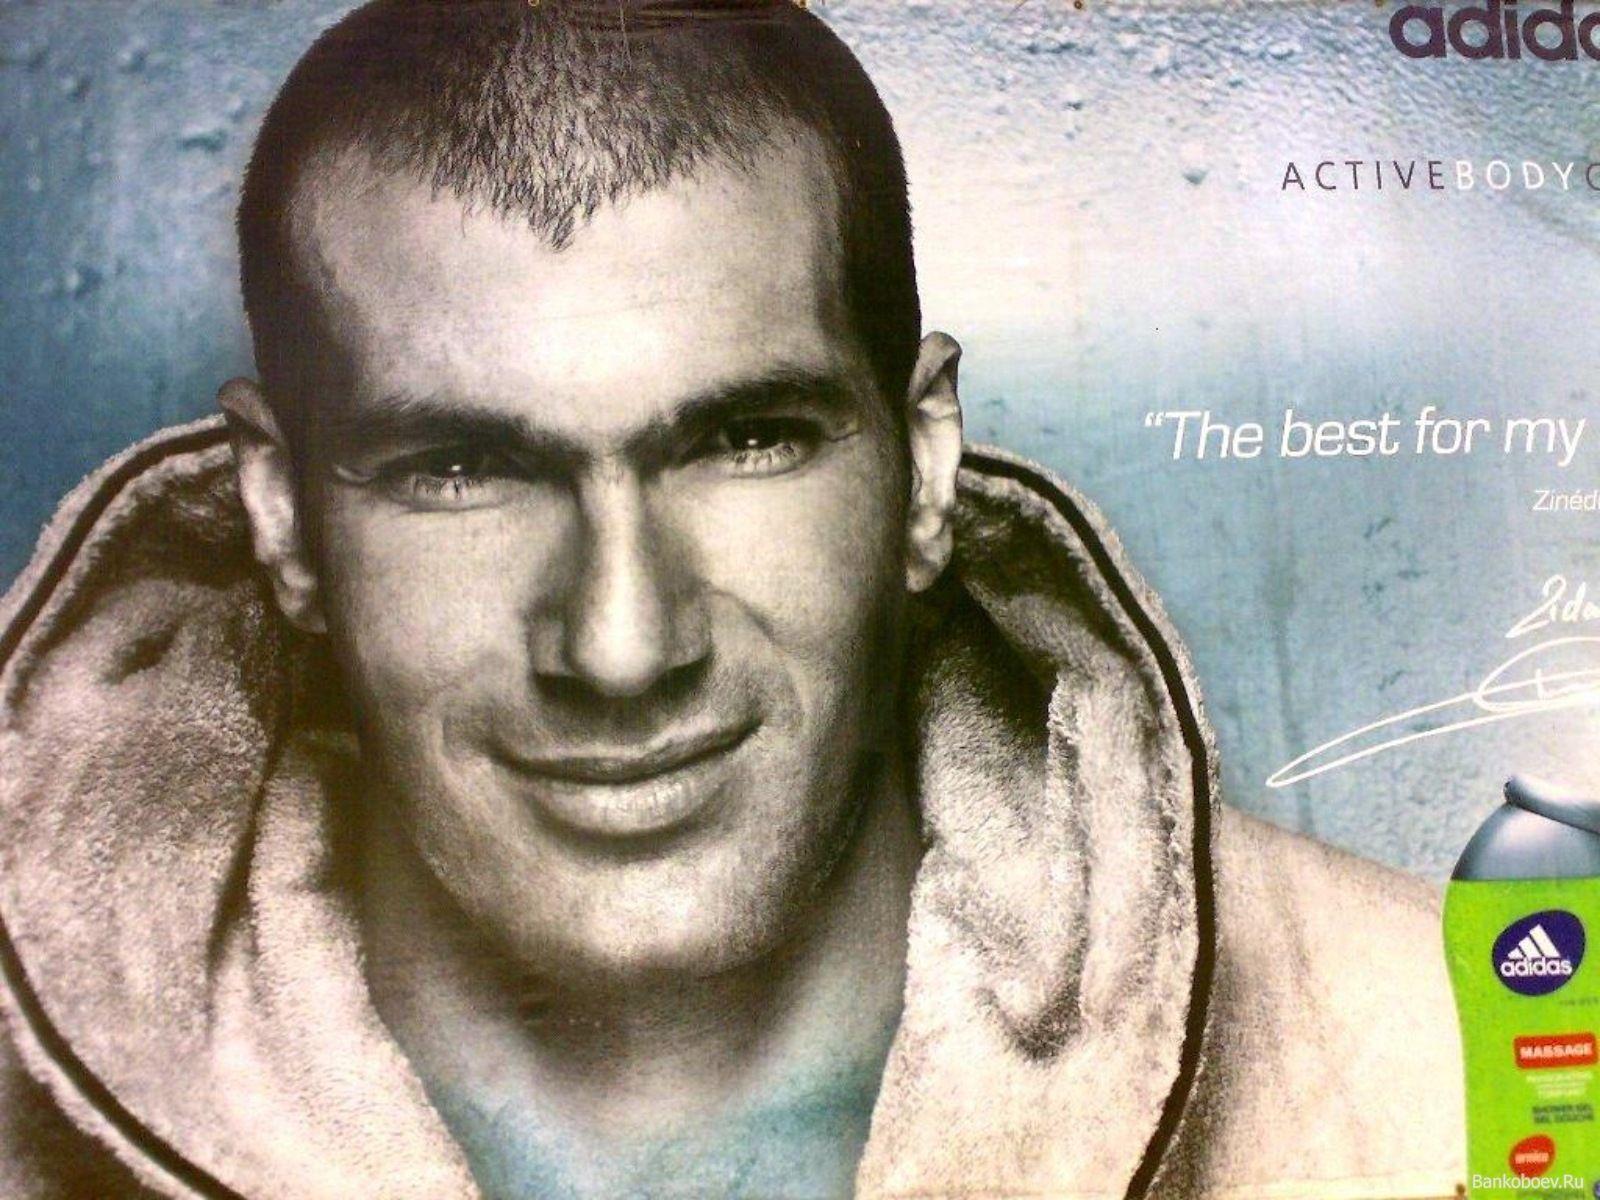 Zidane Wallpaper